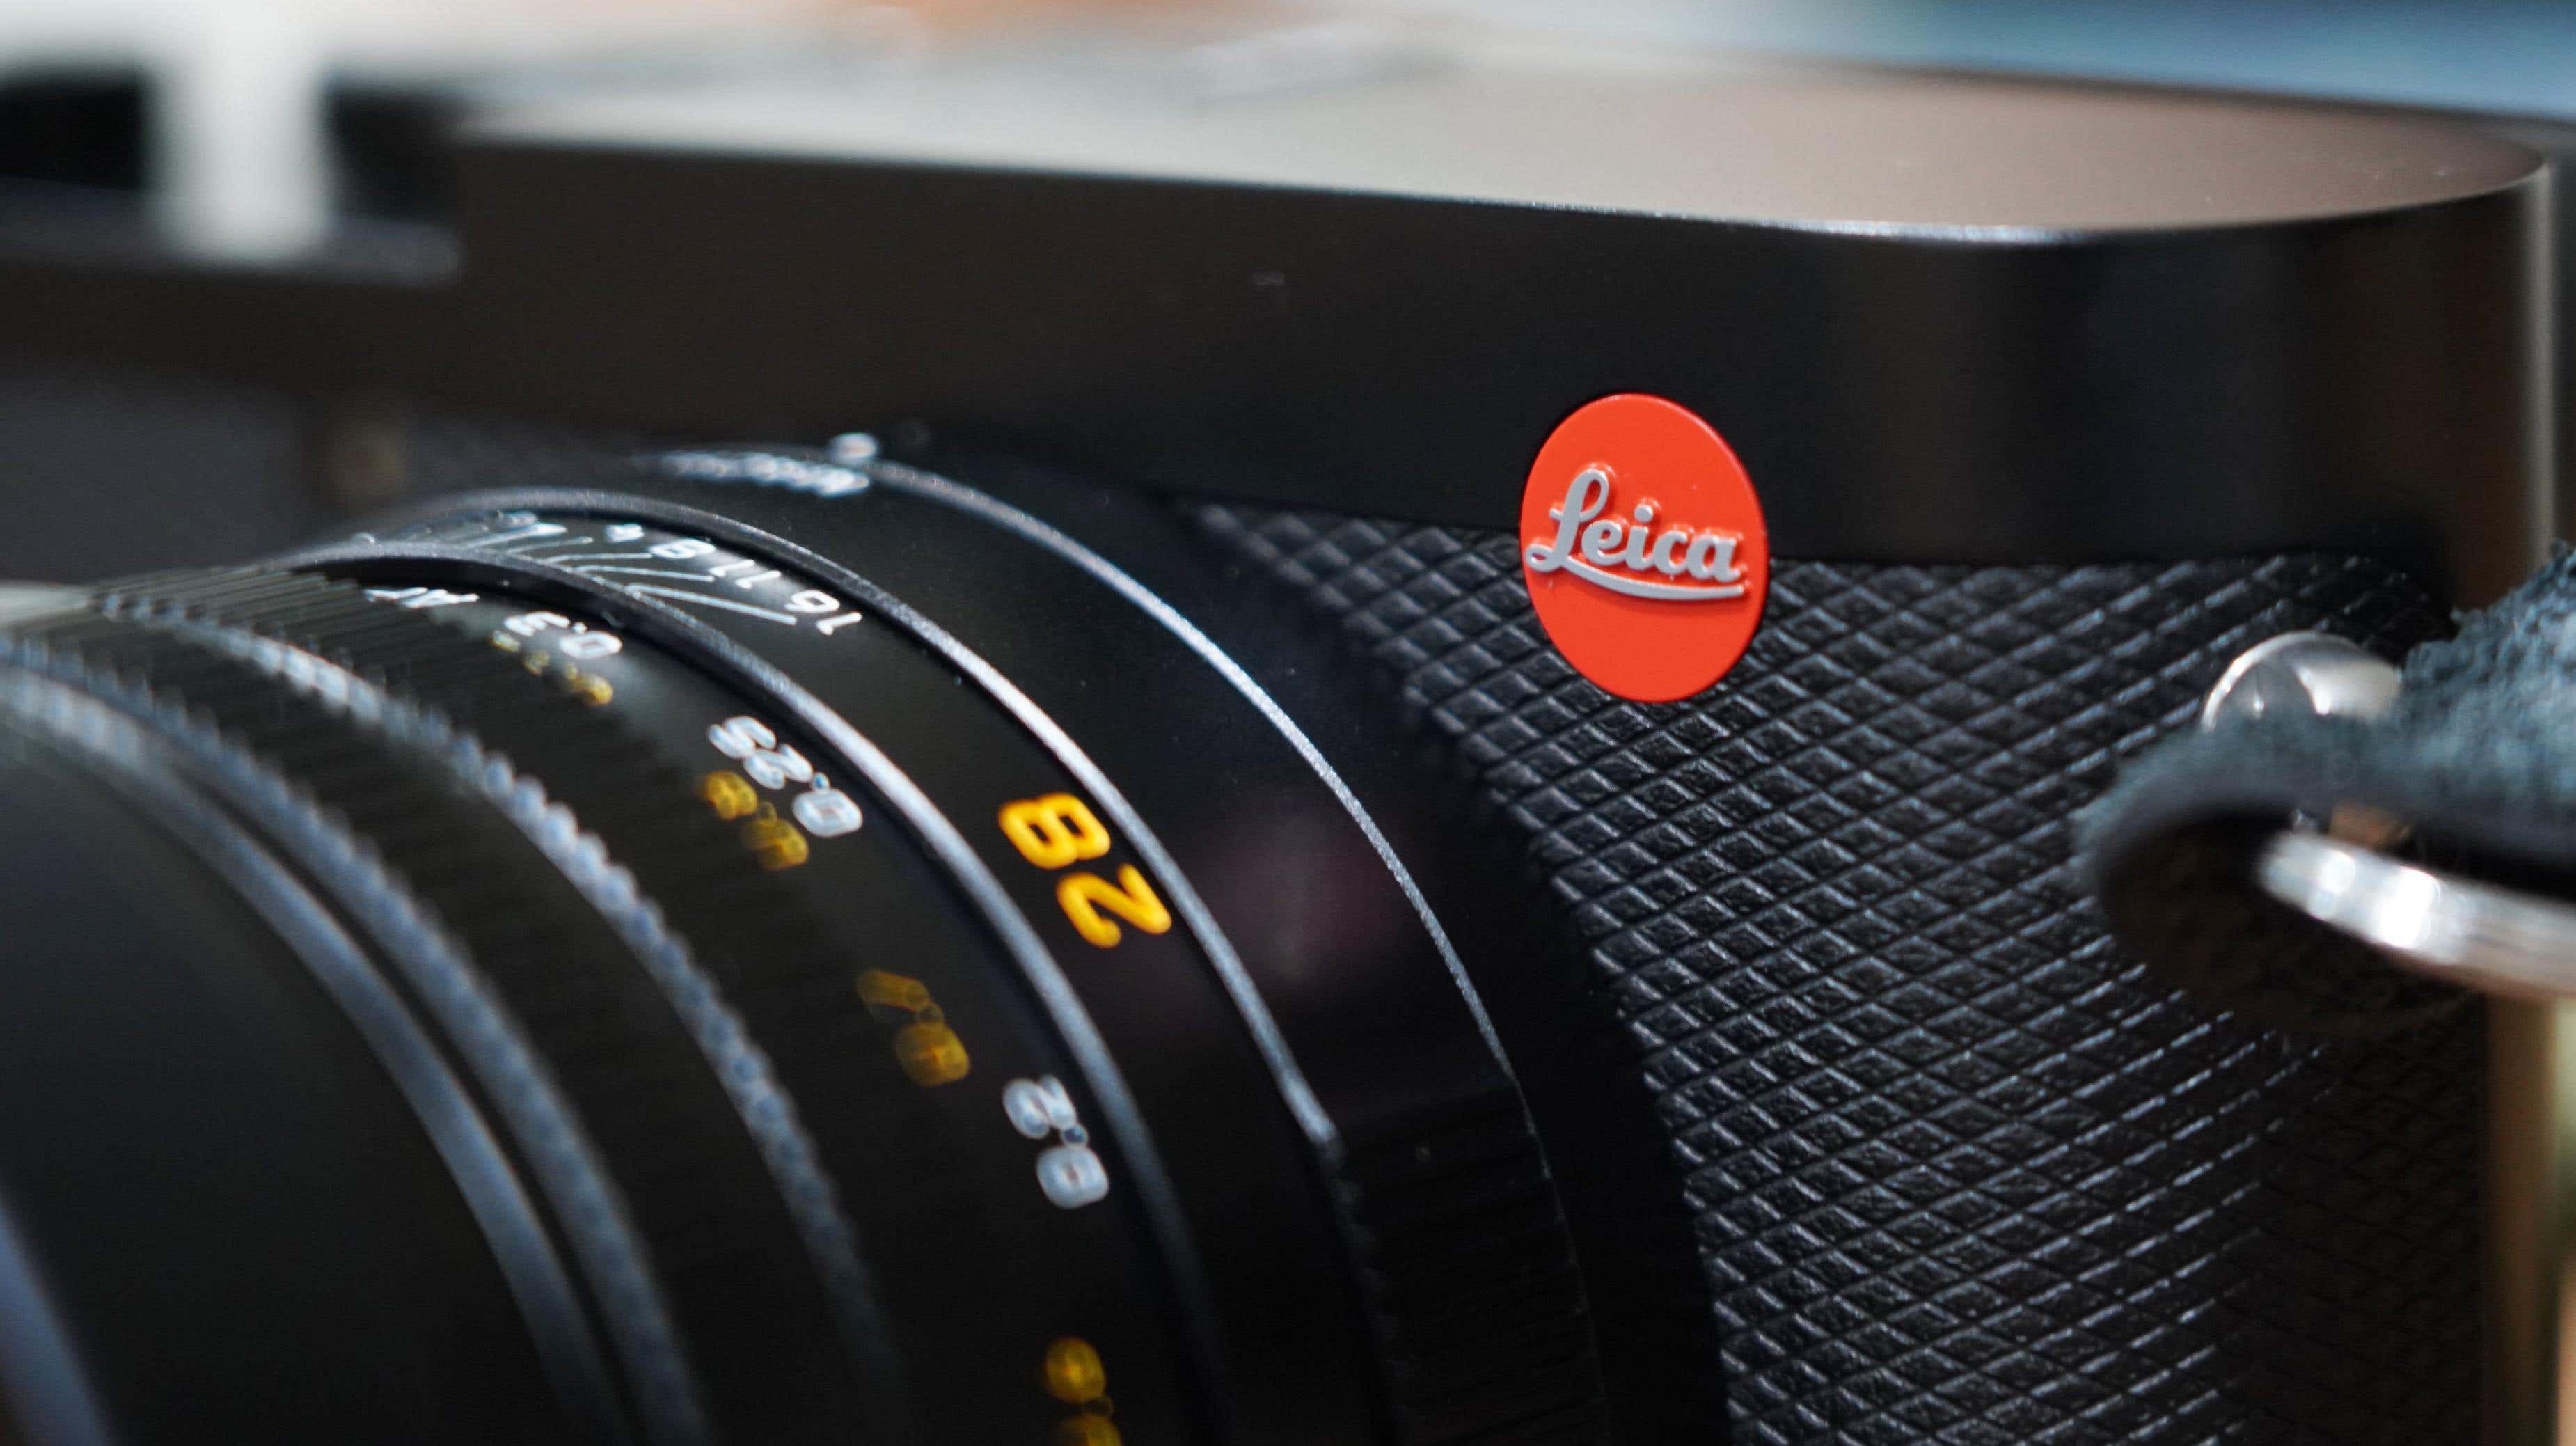 Leica, 9.500 Dolarlık Yeni Kamerasının Foto Muhabirliğini Yapay Zekadan Kurtaracağını Umuyor başlıklı makale için resim